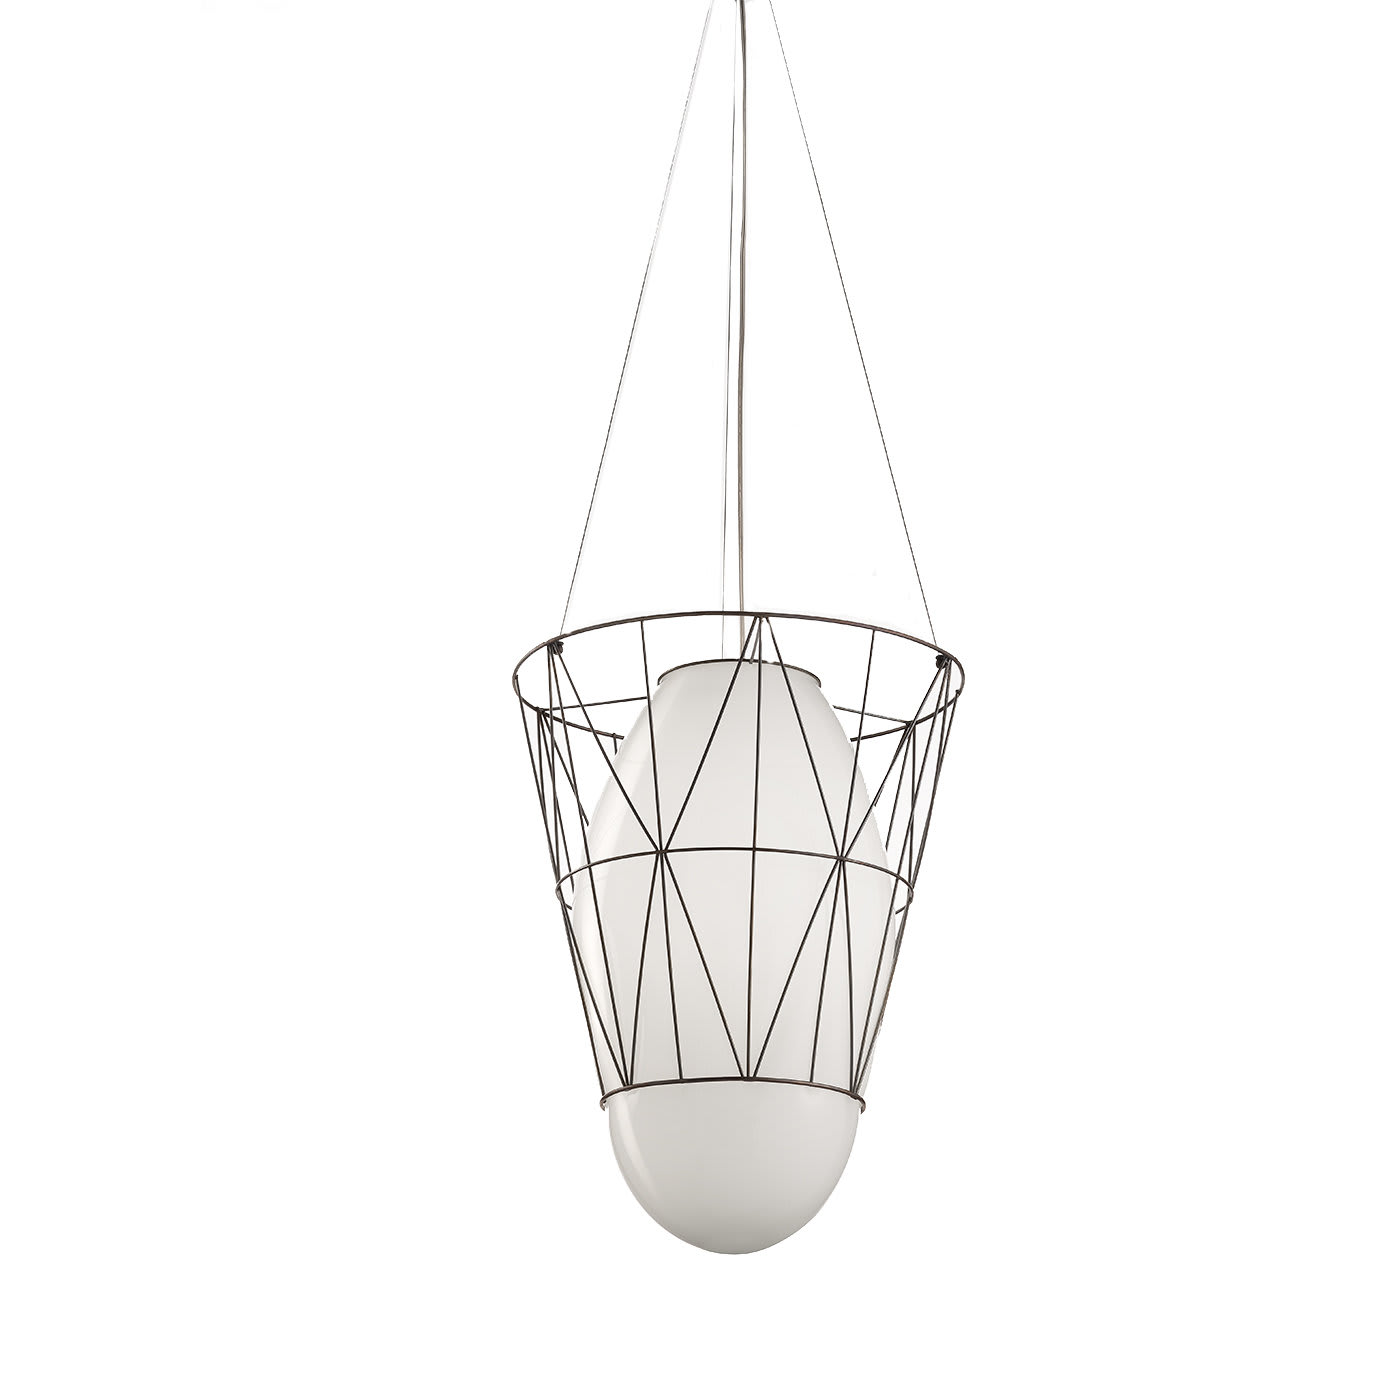 Segni Conic Ceiling Lamp - Gumdesign